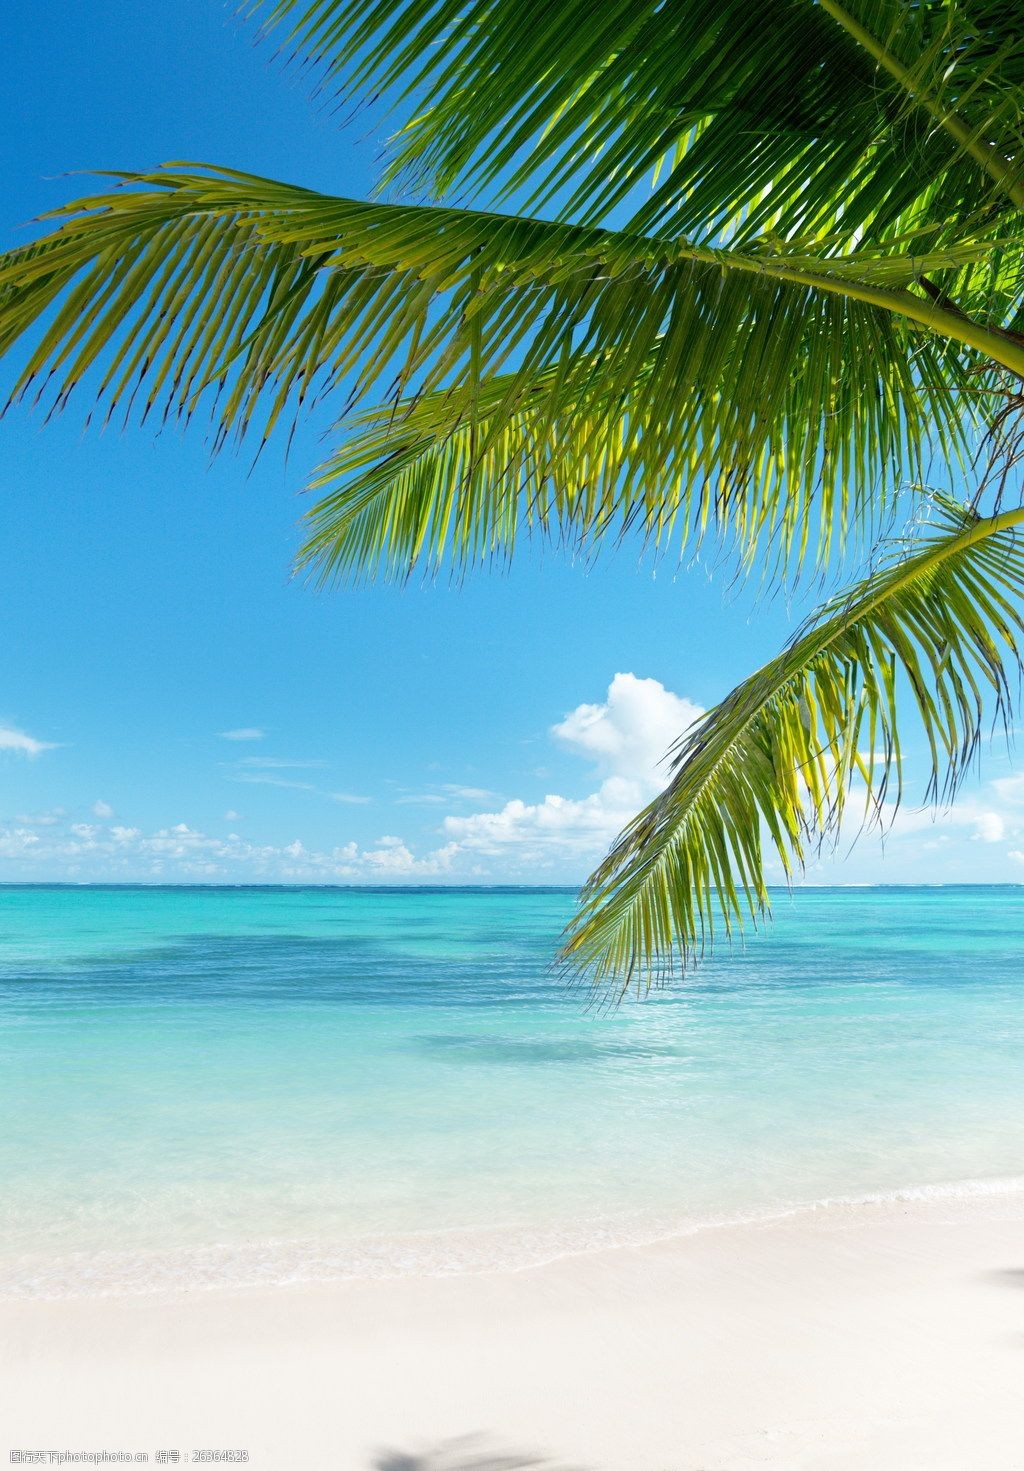 关键词:唯美海边椰子树风景景图片下载 蓝色 清新 海边 大海 海水